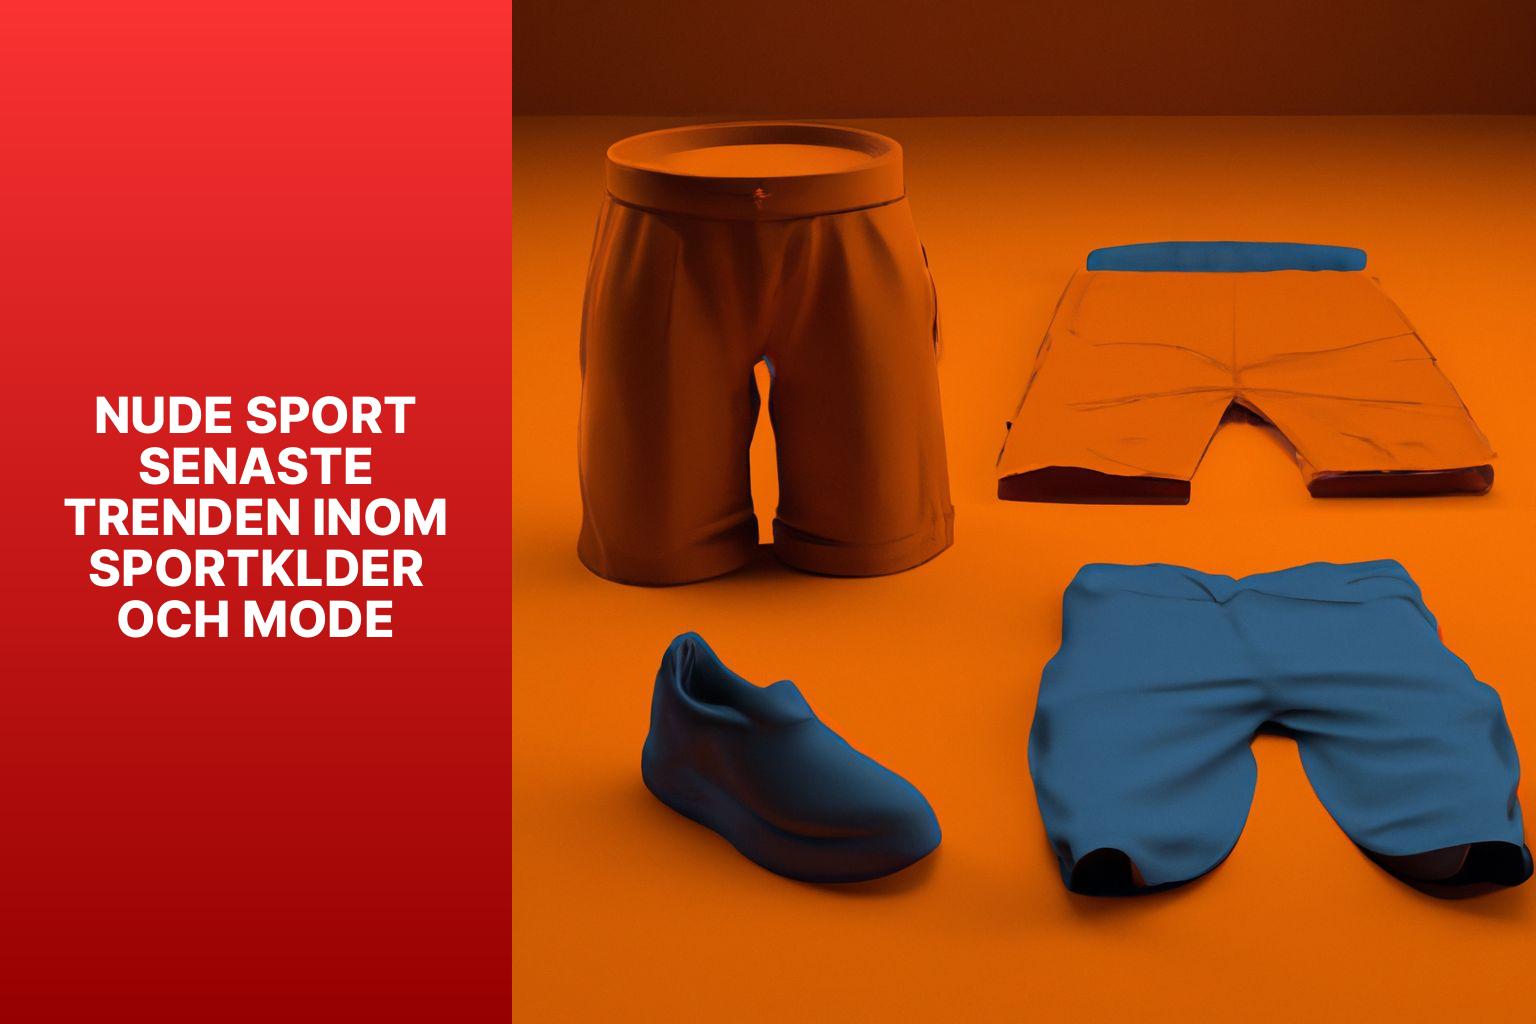 Nude Sport Senaste Trenden inom Sportklder och mode